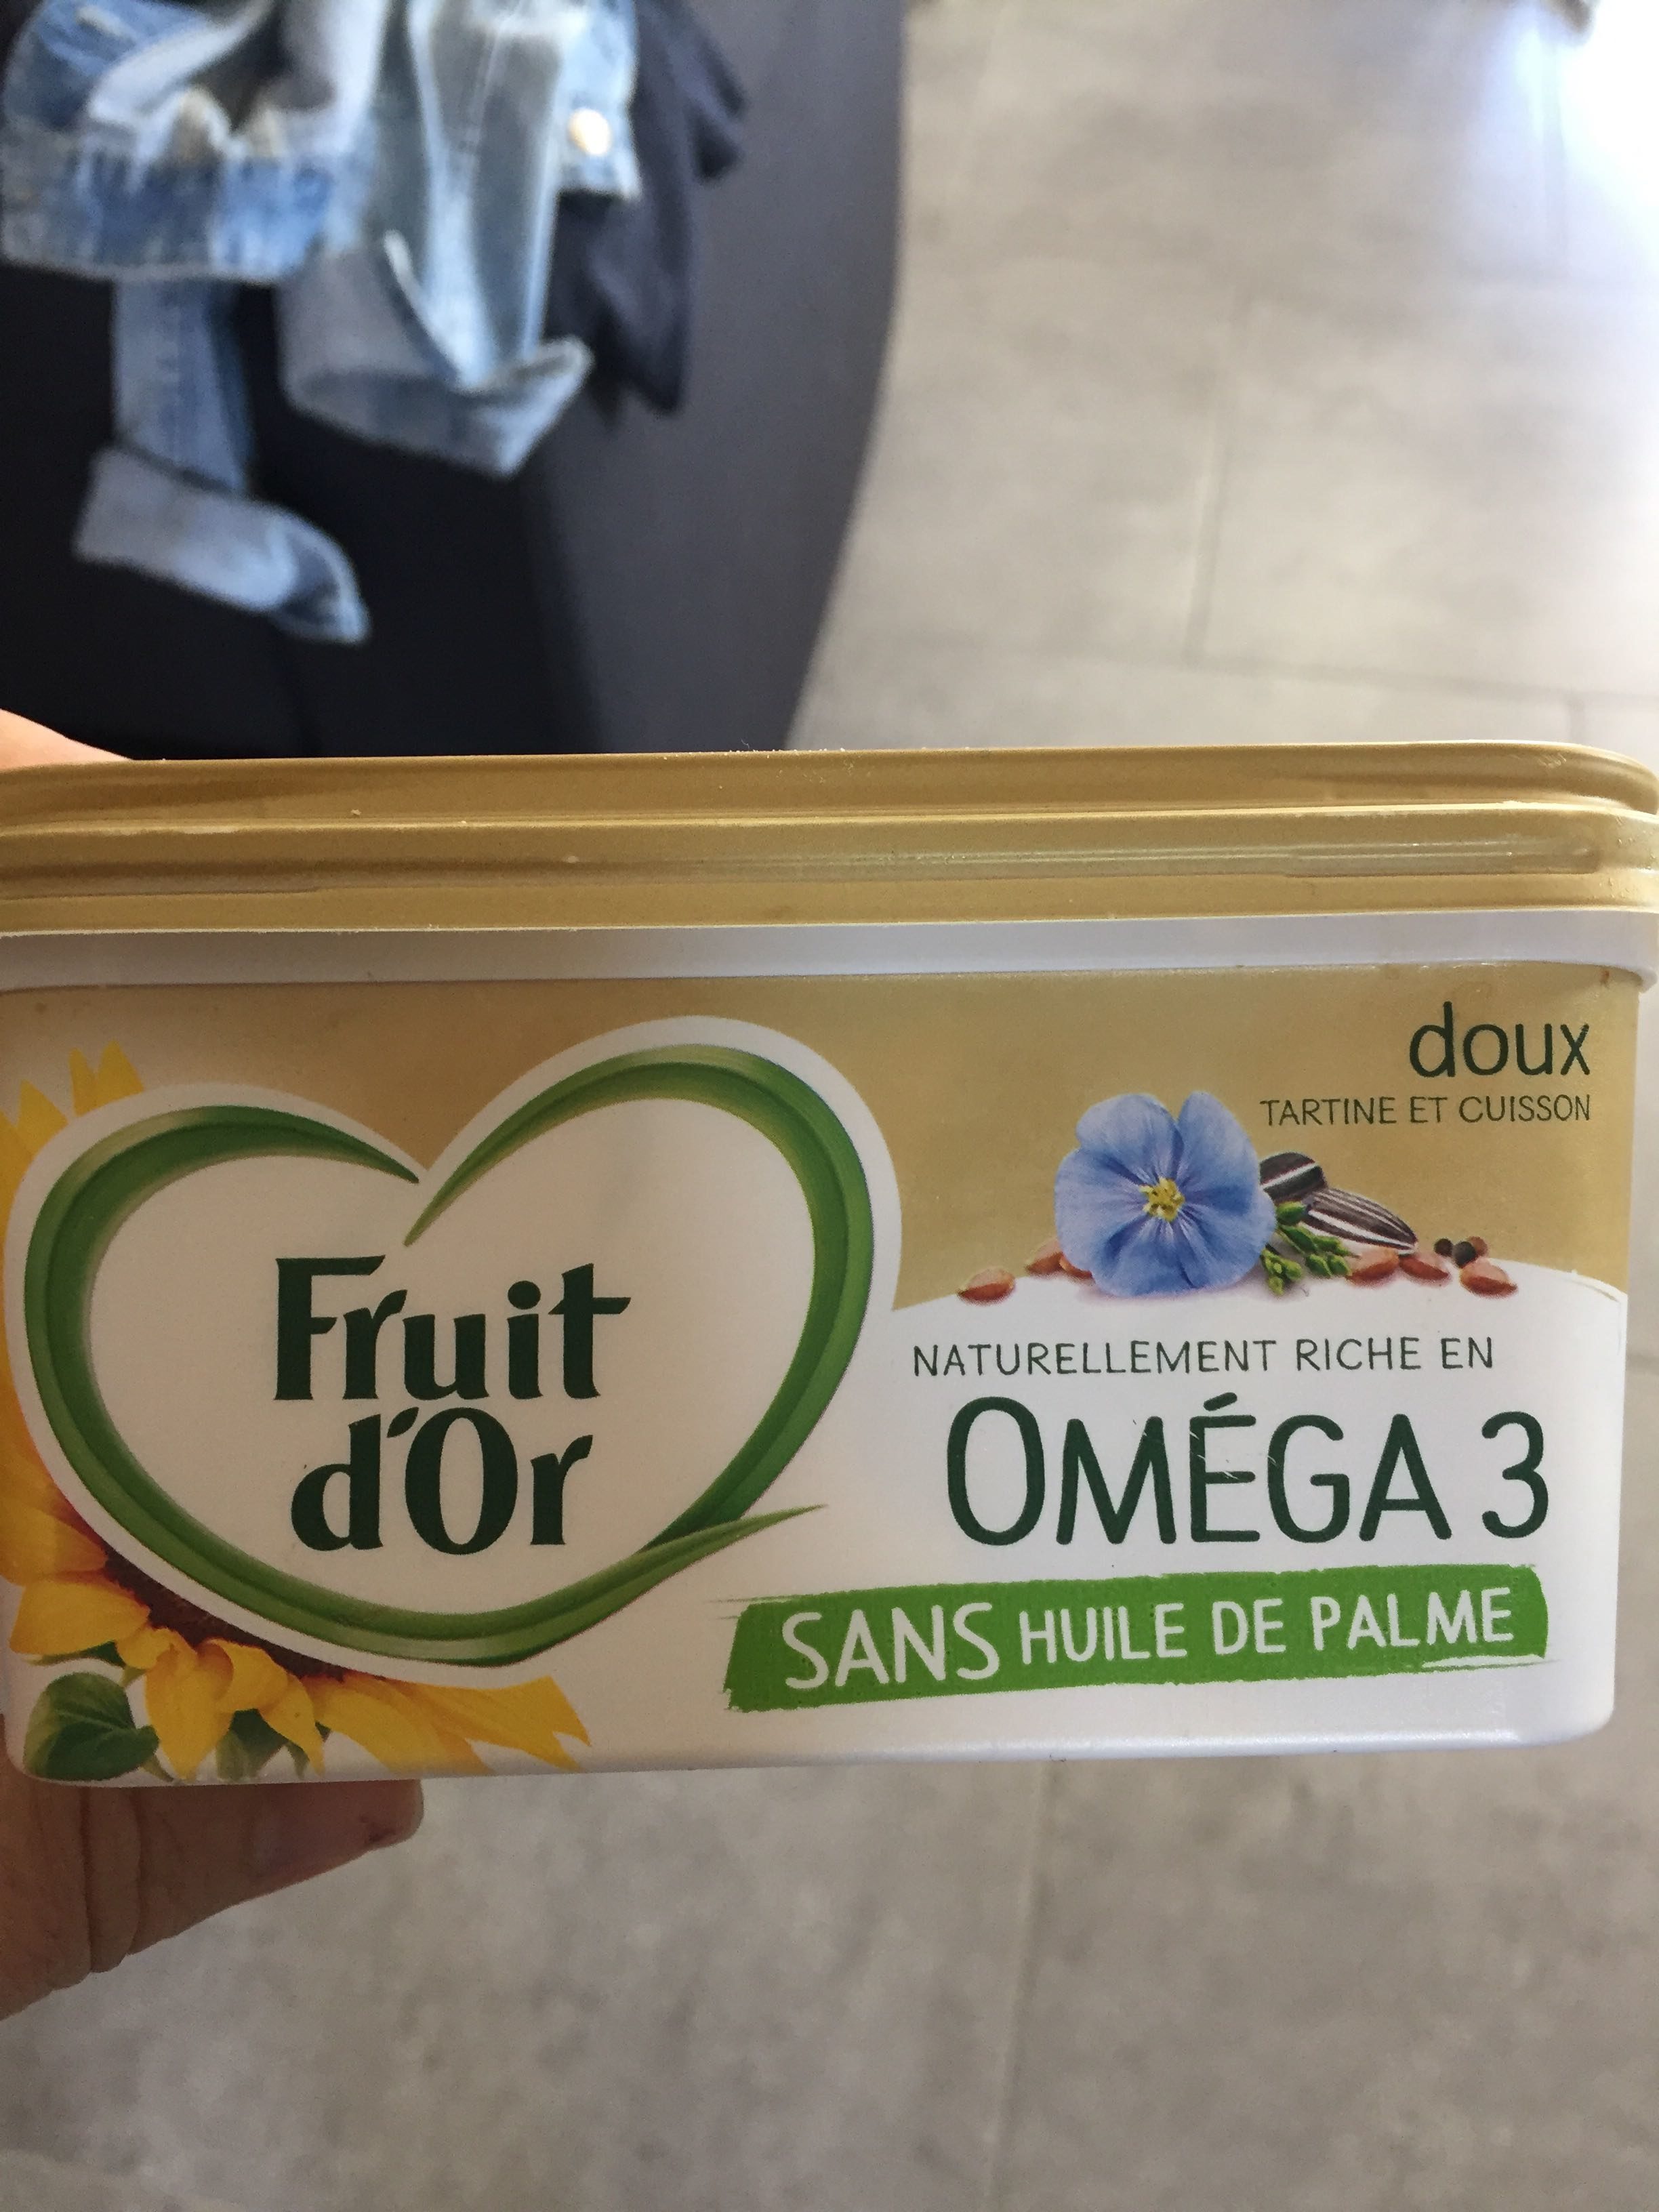 Fruit d’or oméga 3 - Produkt - fr